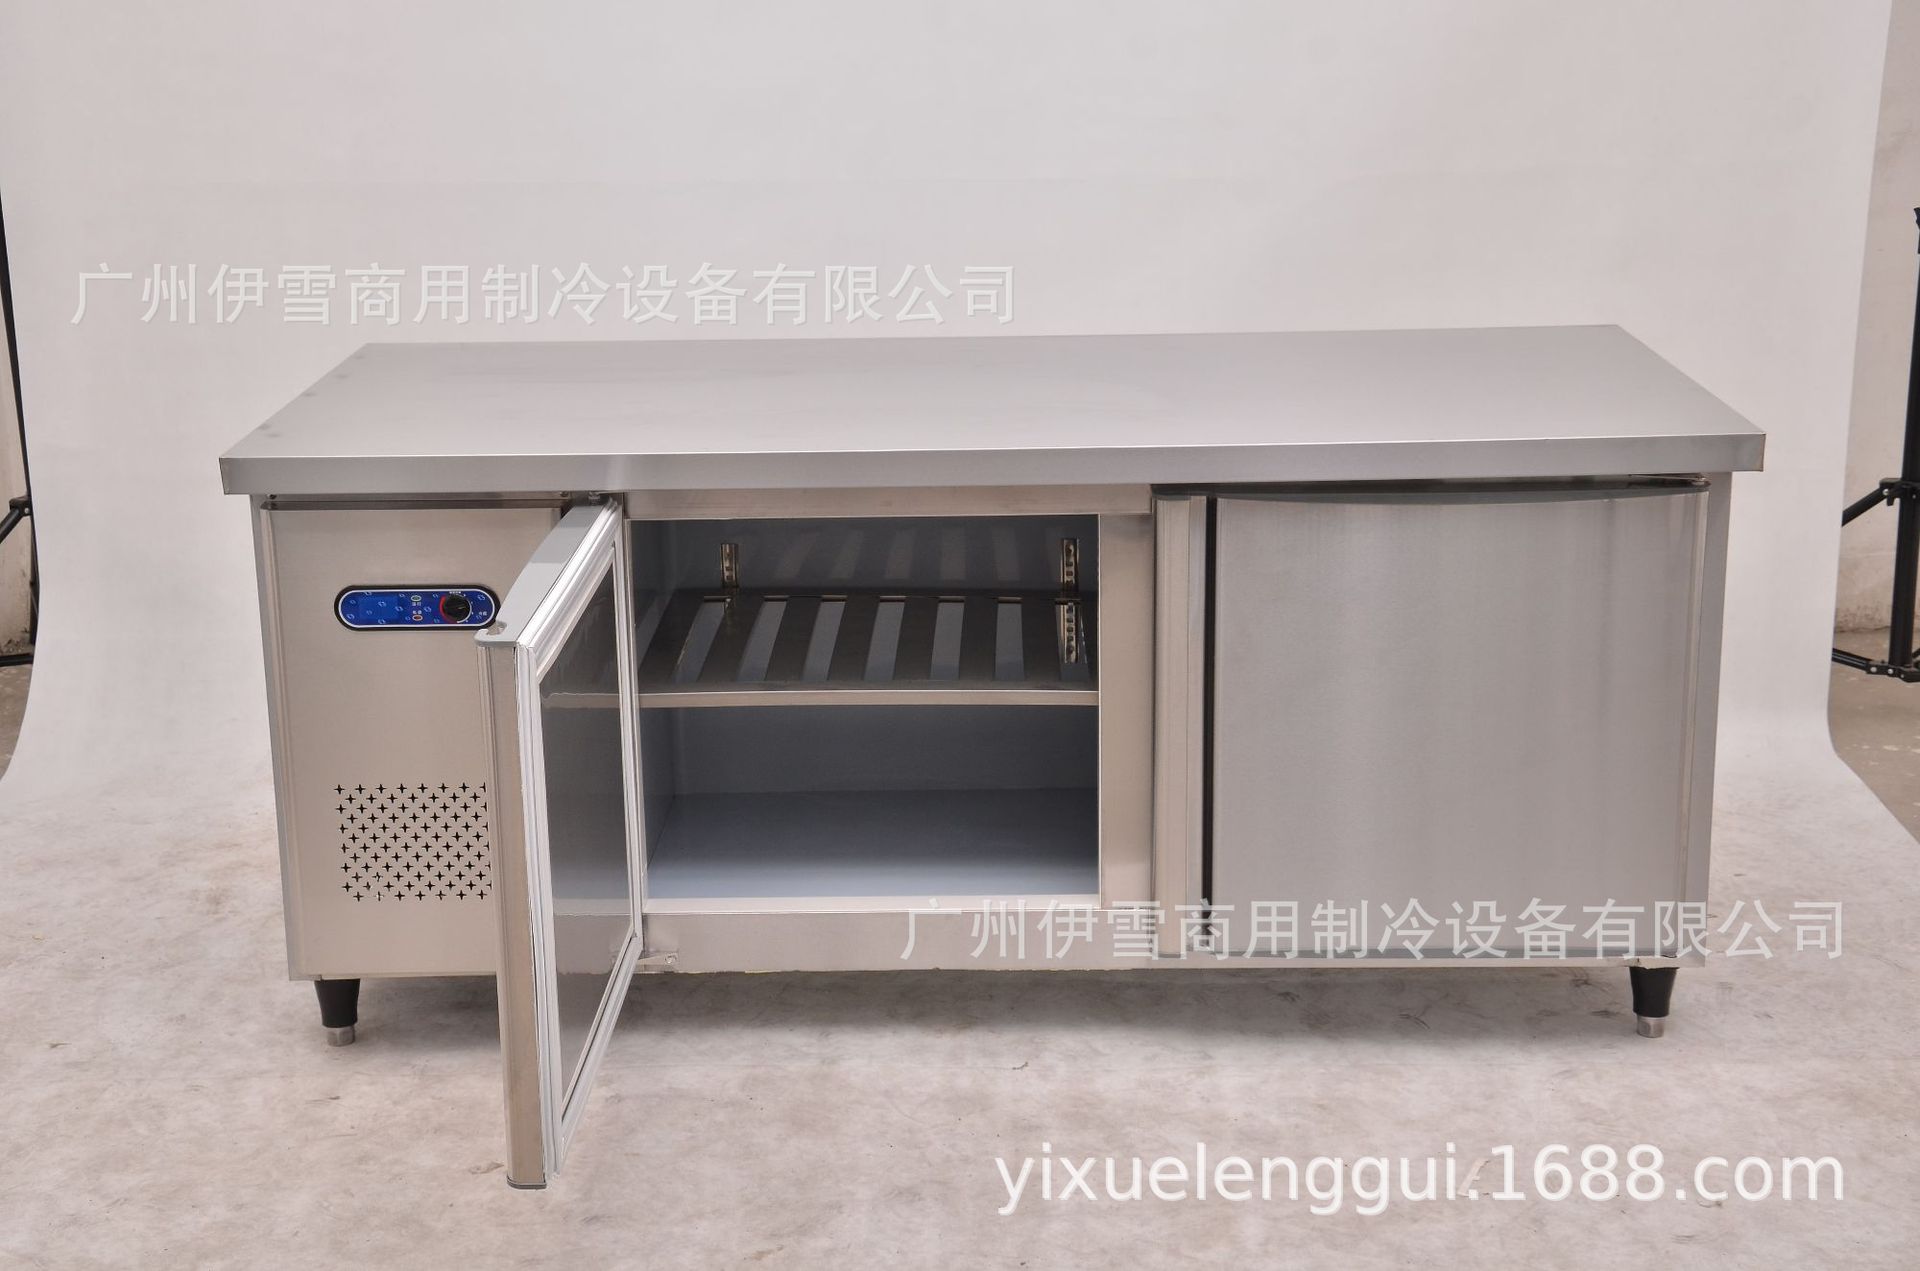 1.8米不锈钢 操作台 冷藏非标工作台 直冷厨房冰柜示例图2